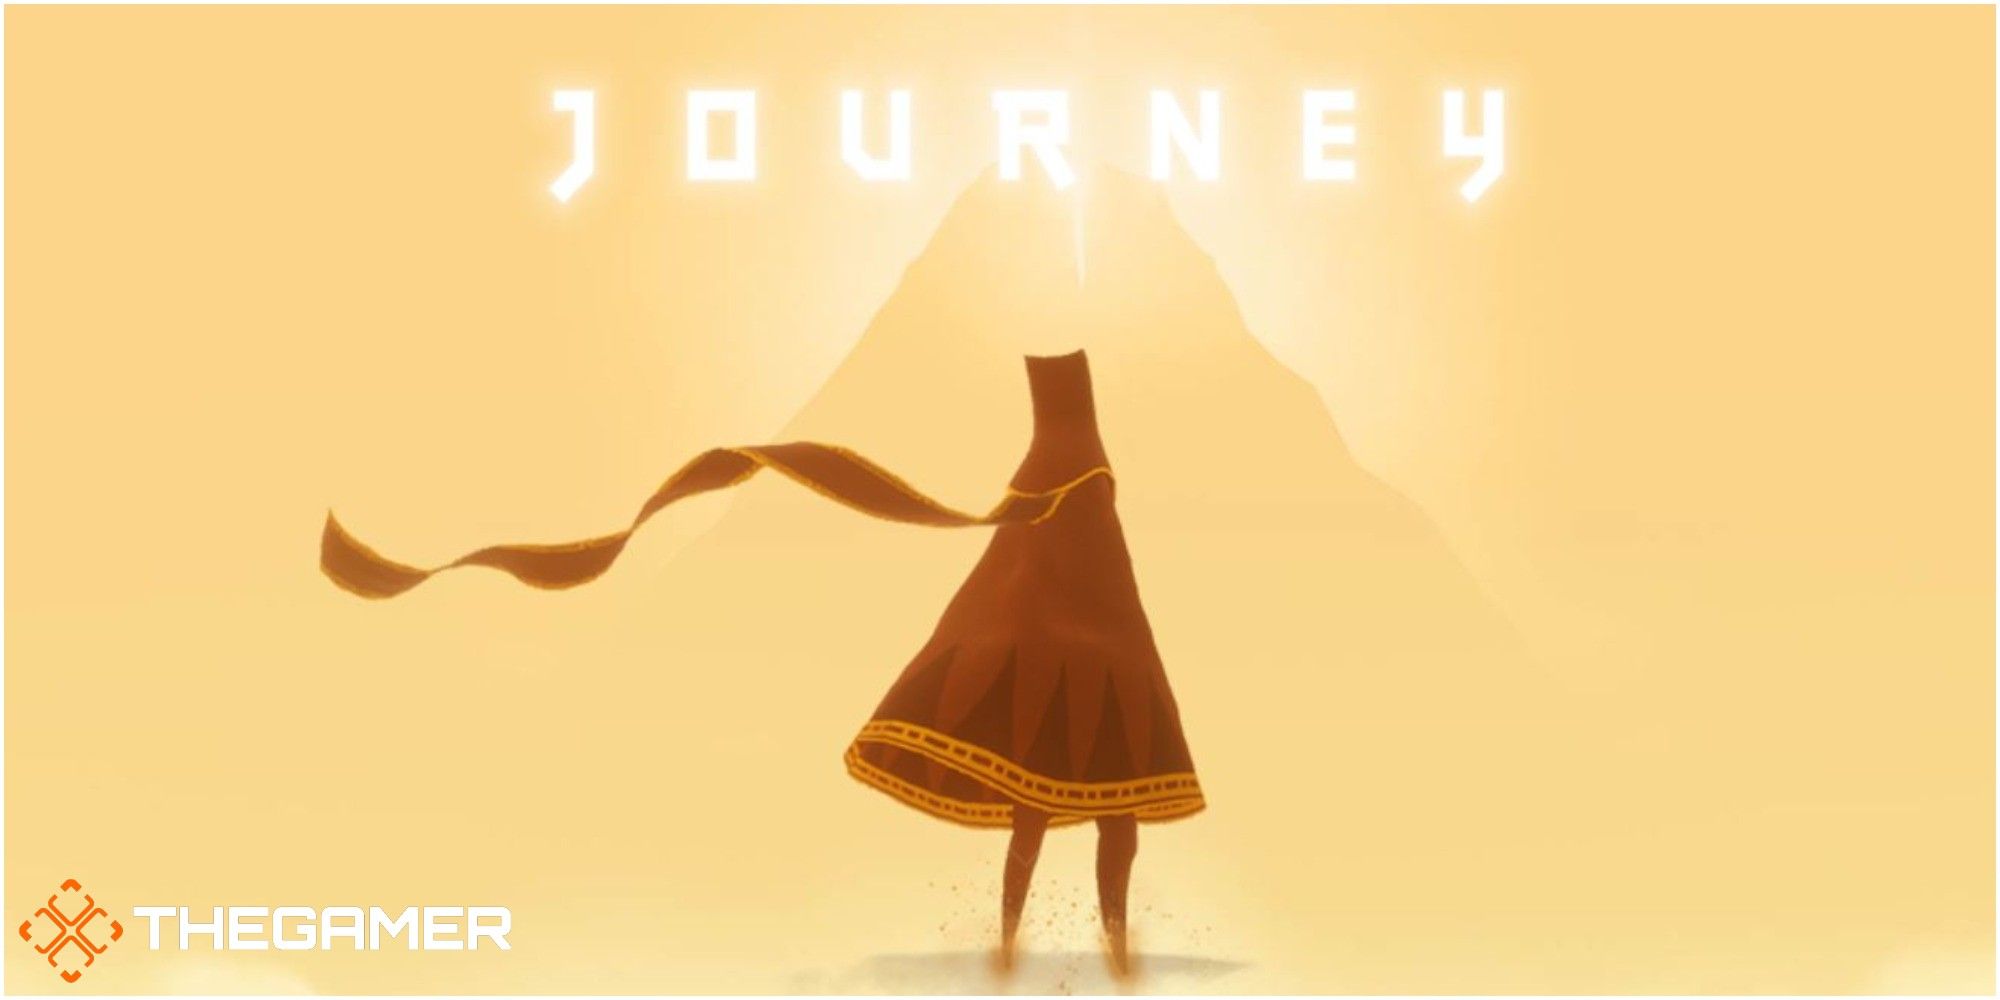 Celestyal journey. Journey игра thatgamecompany. Journey (игра, 2012). Джорни путешествие игра. Journey игра логотип.